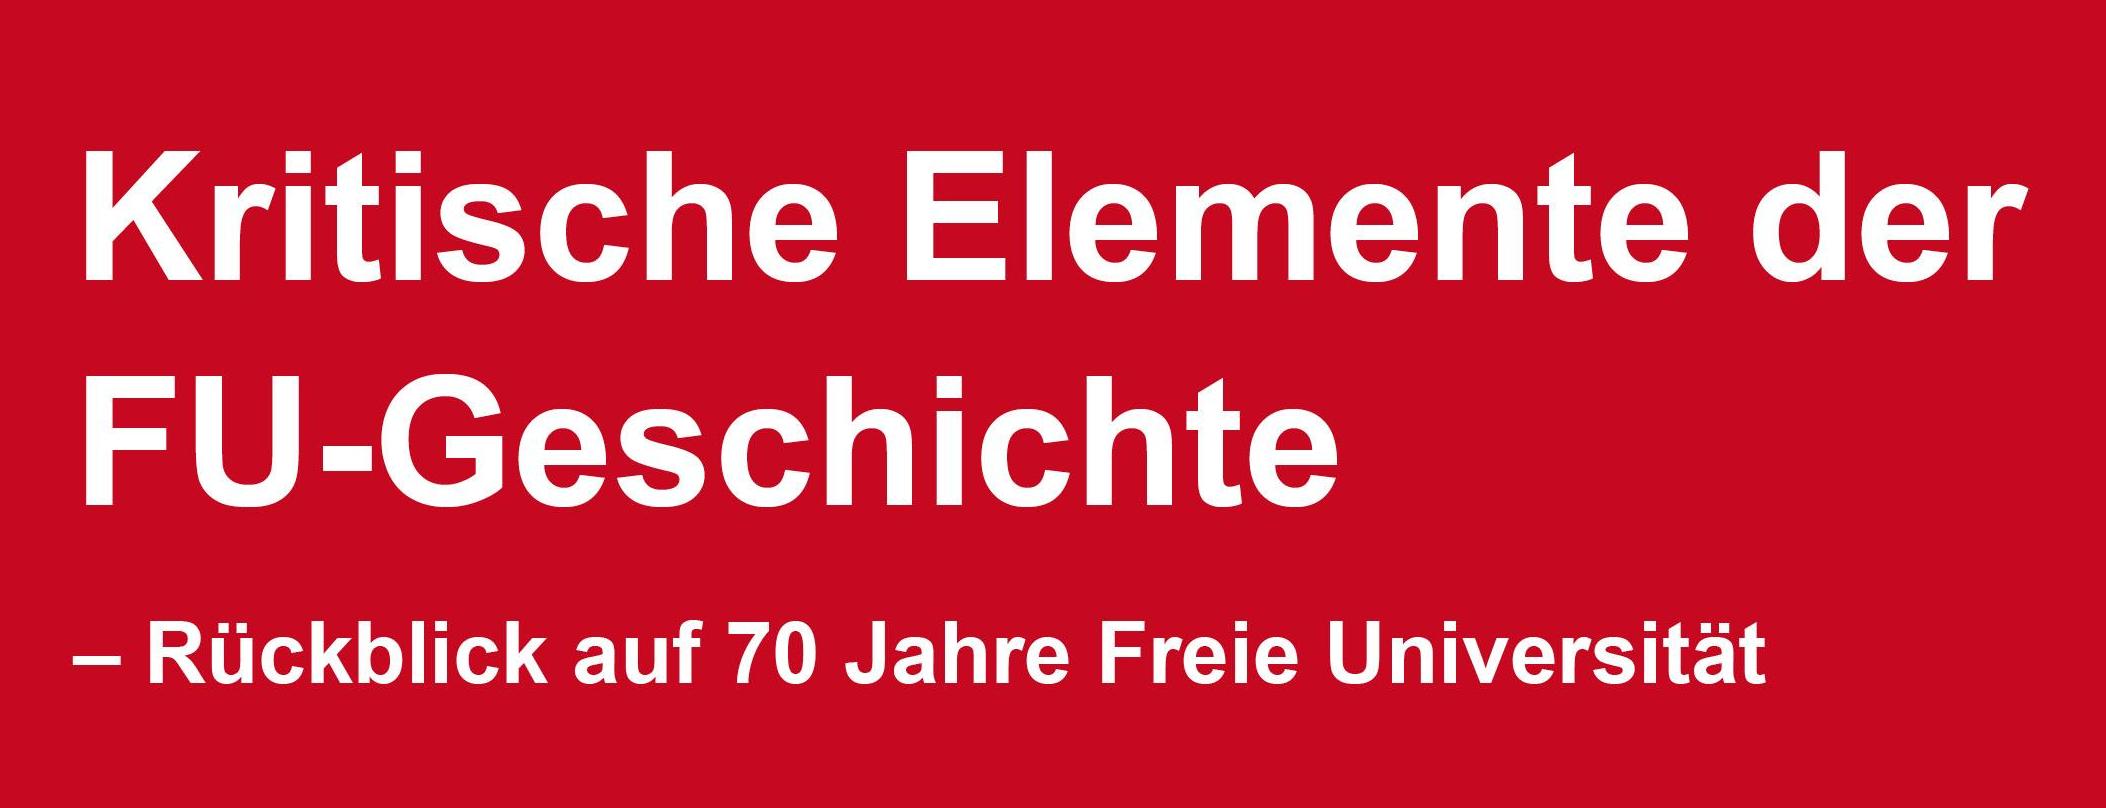 Header_Kritische Elemente der FU-Geschichte